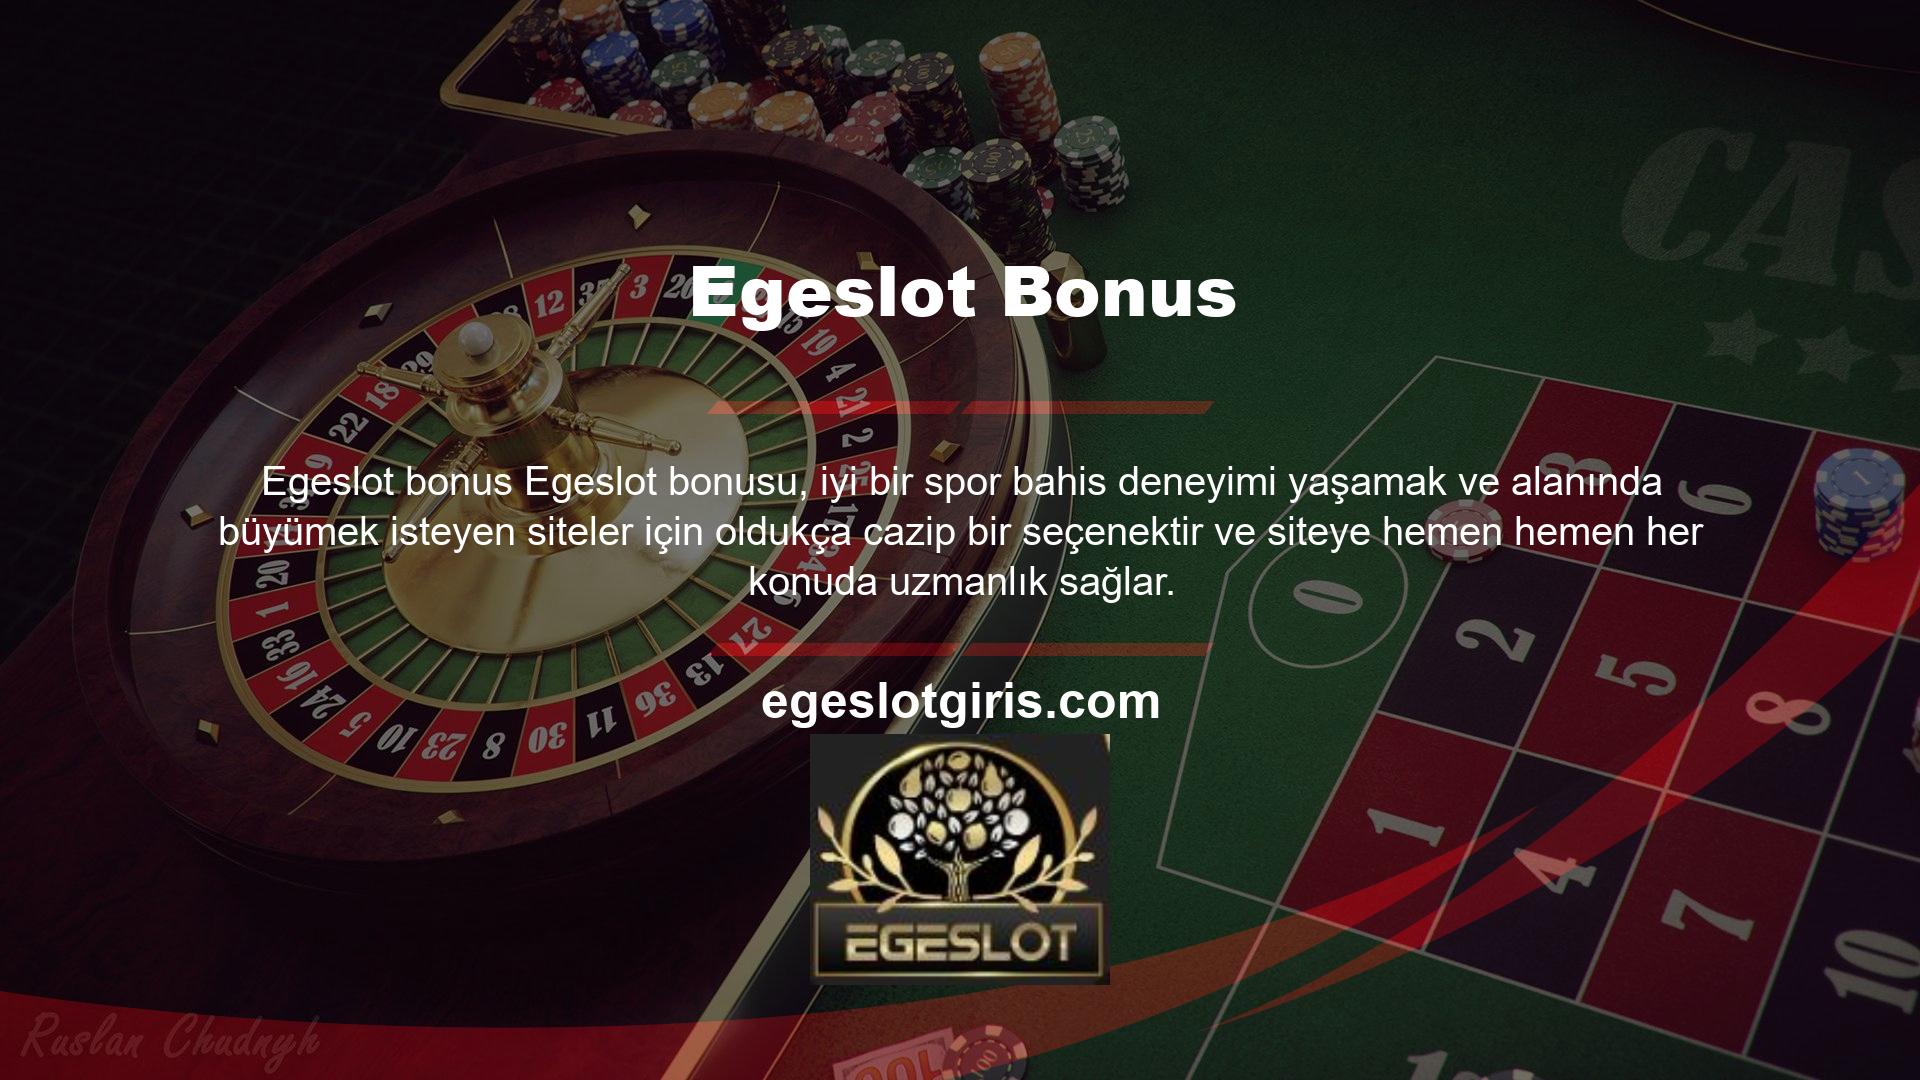 Egeslot Bonus, akıcı ve kaliteli oyunlar sunan gelişmiş platformuyla tanınıyor